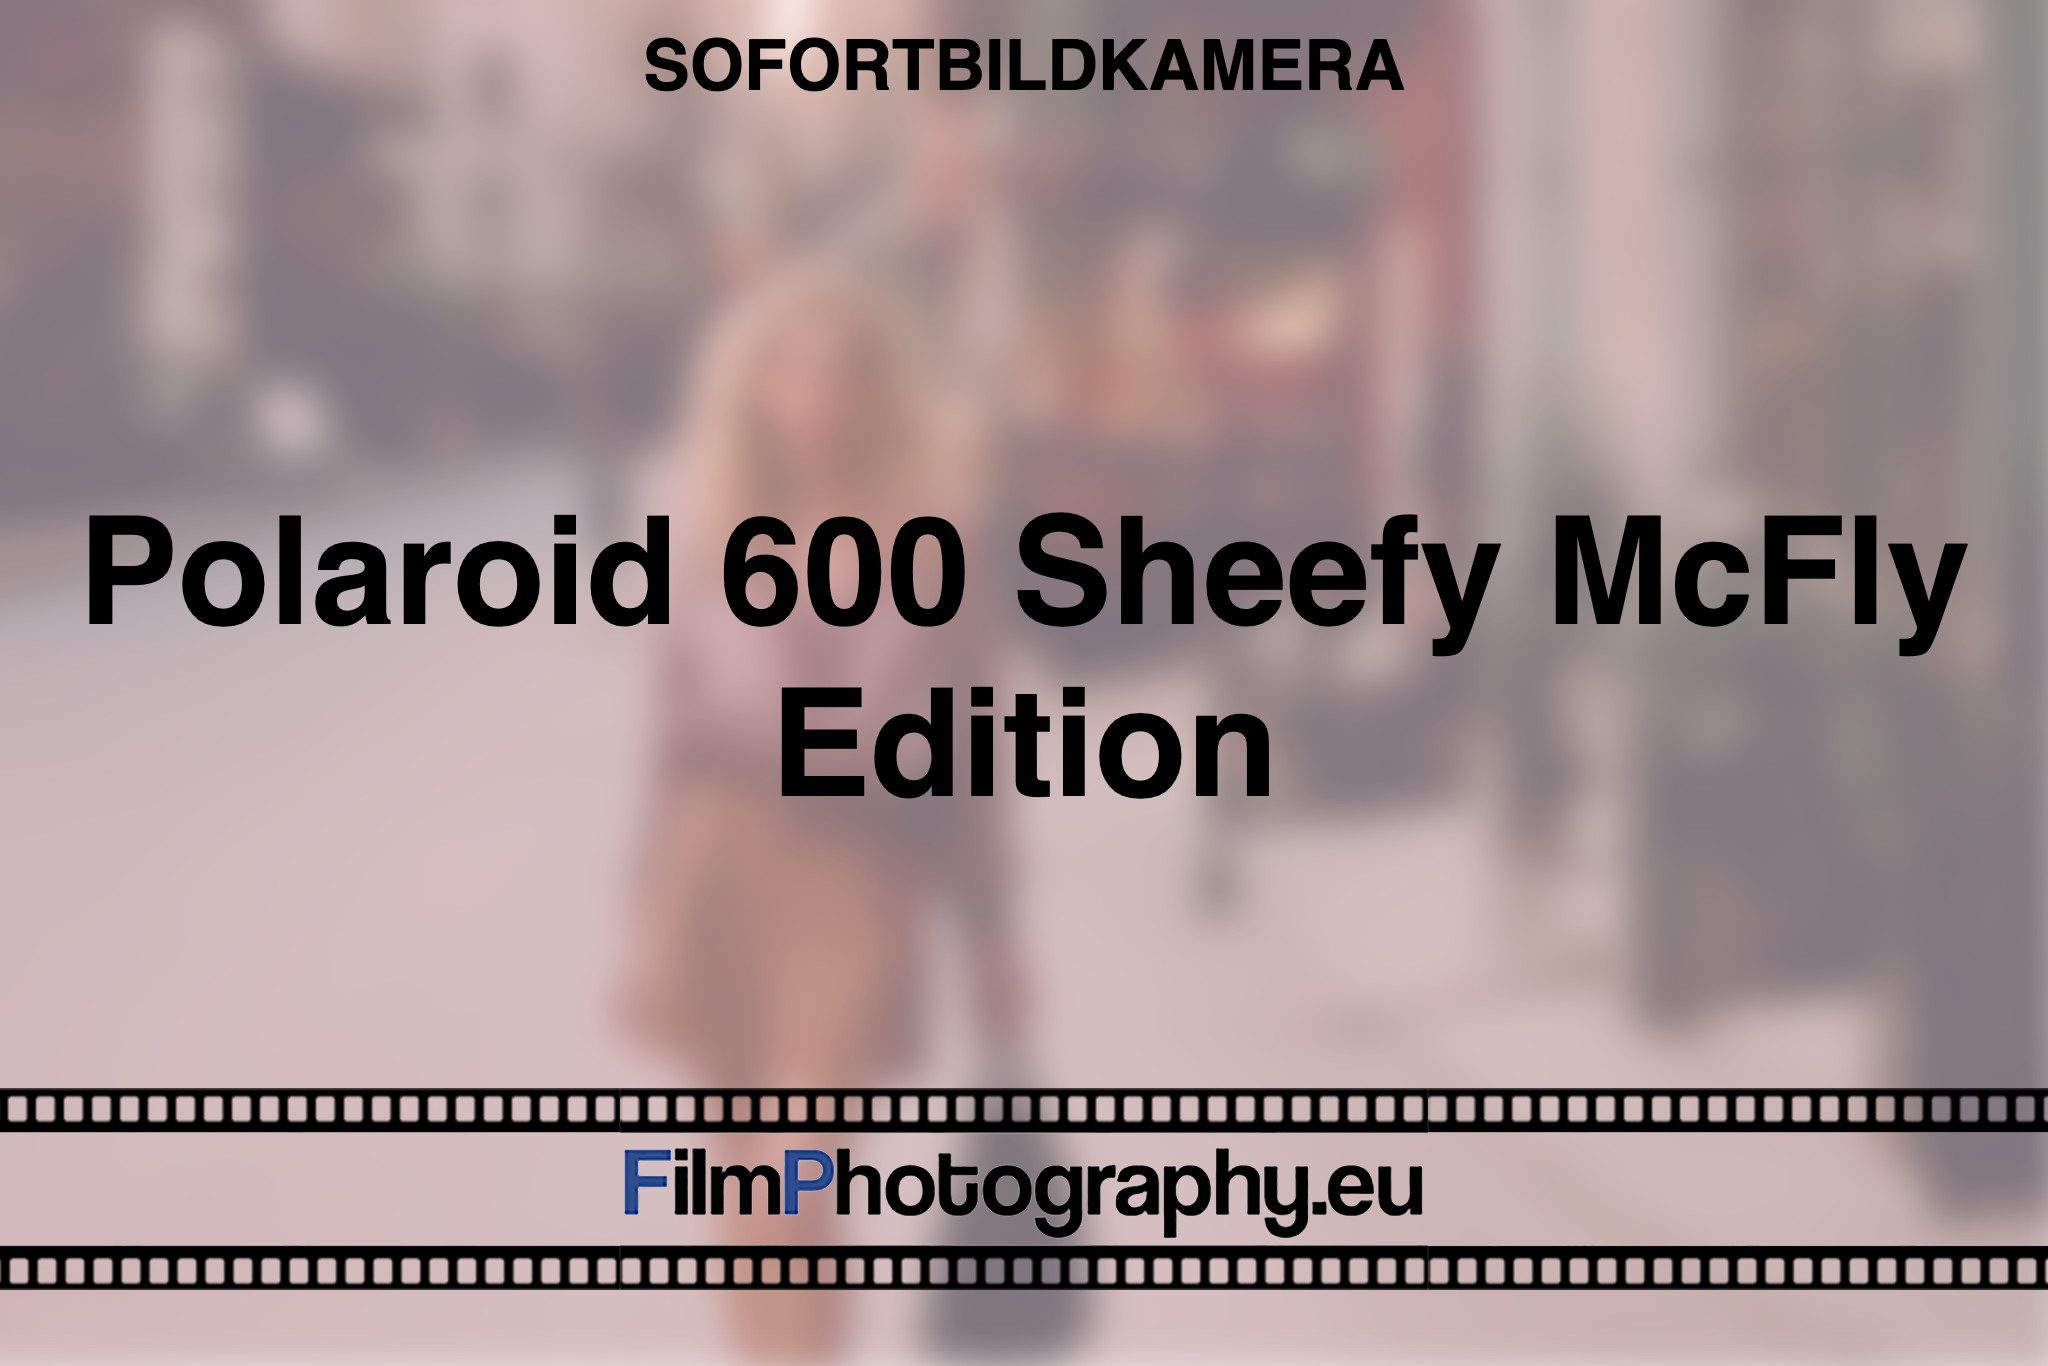 polaroid-600-sheefy-mcfly-edition-sofortbildkamera-bnv